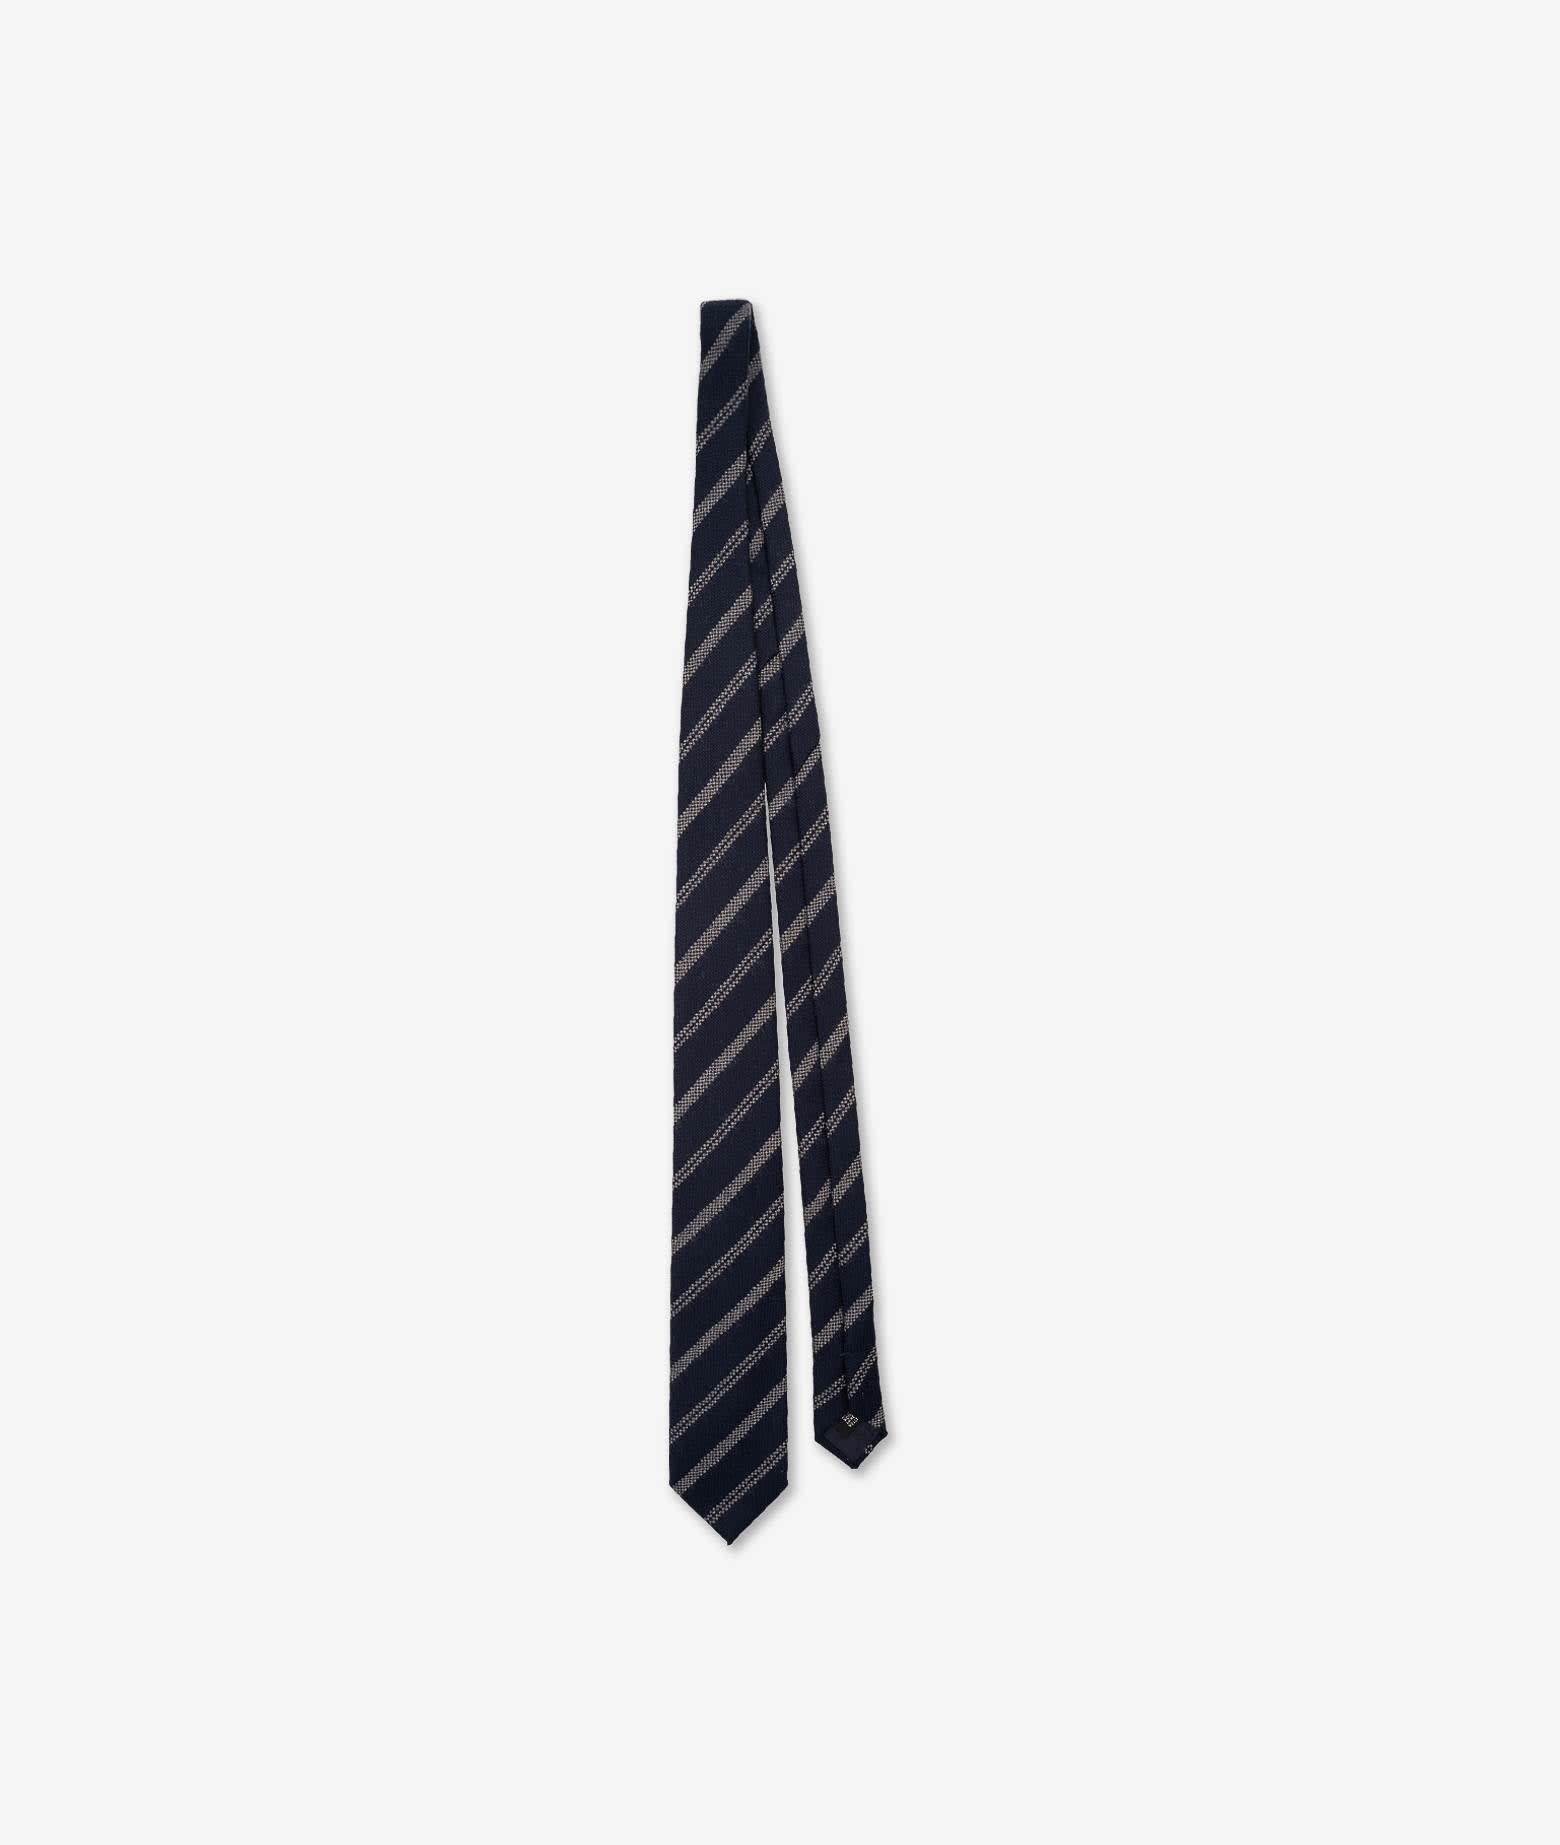 Shop Larusmiani Regimental Tie Tie In Darkblue